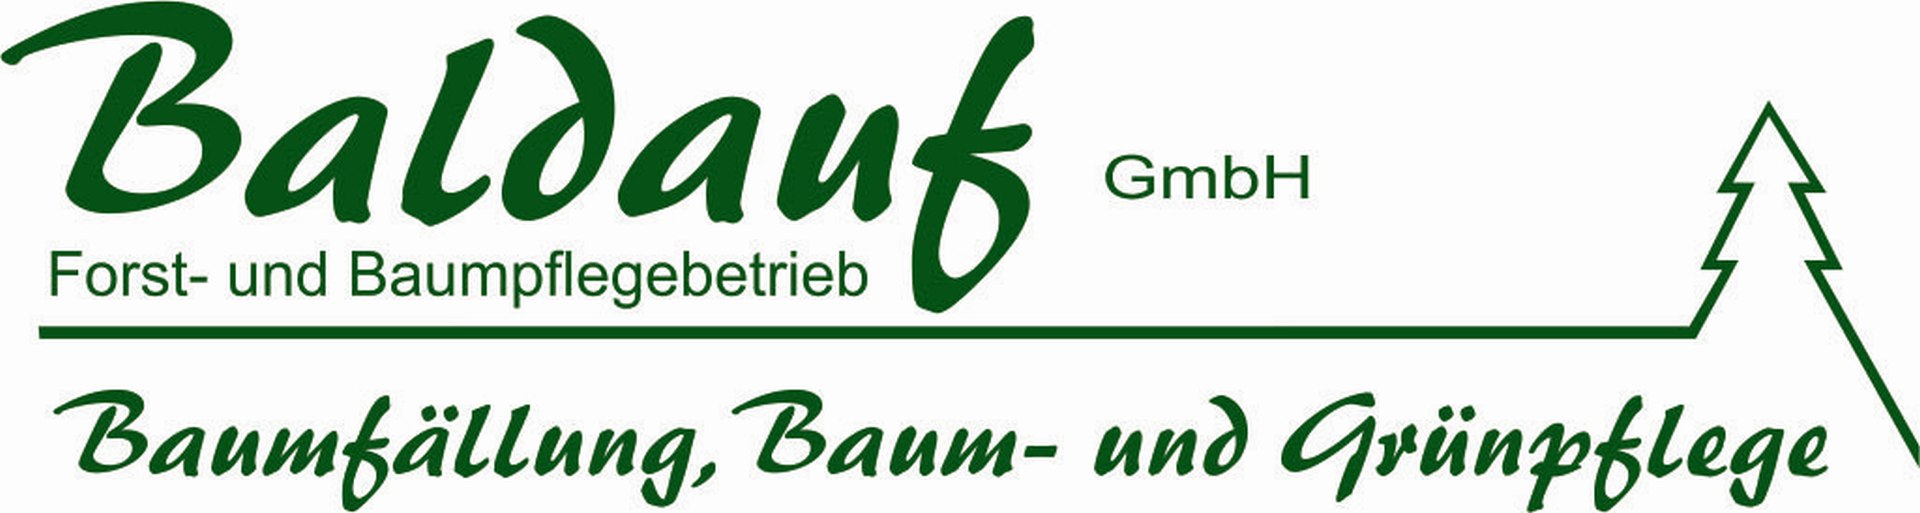 Forst-und Baumpflegebetrieb Baldauf GmbH aus Burkersdorf